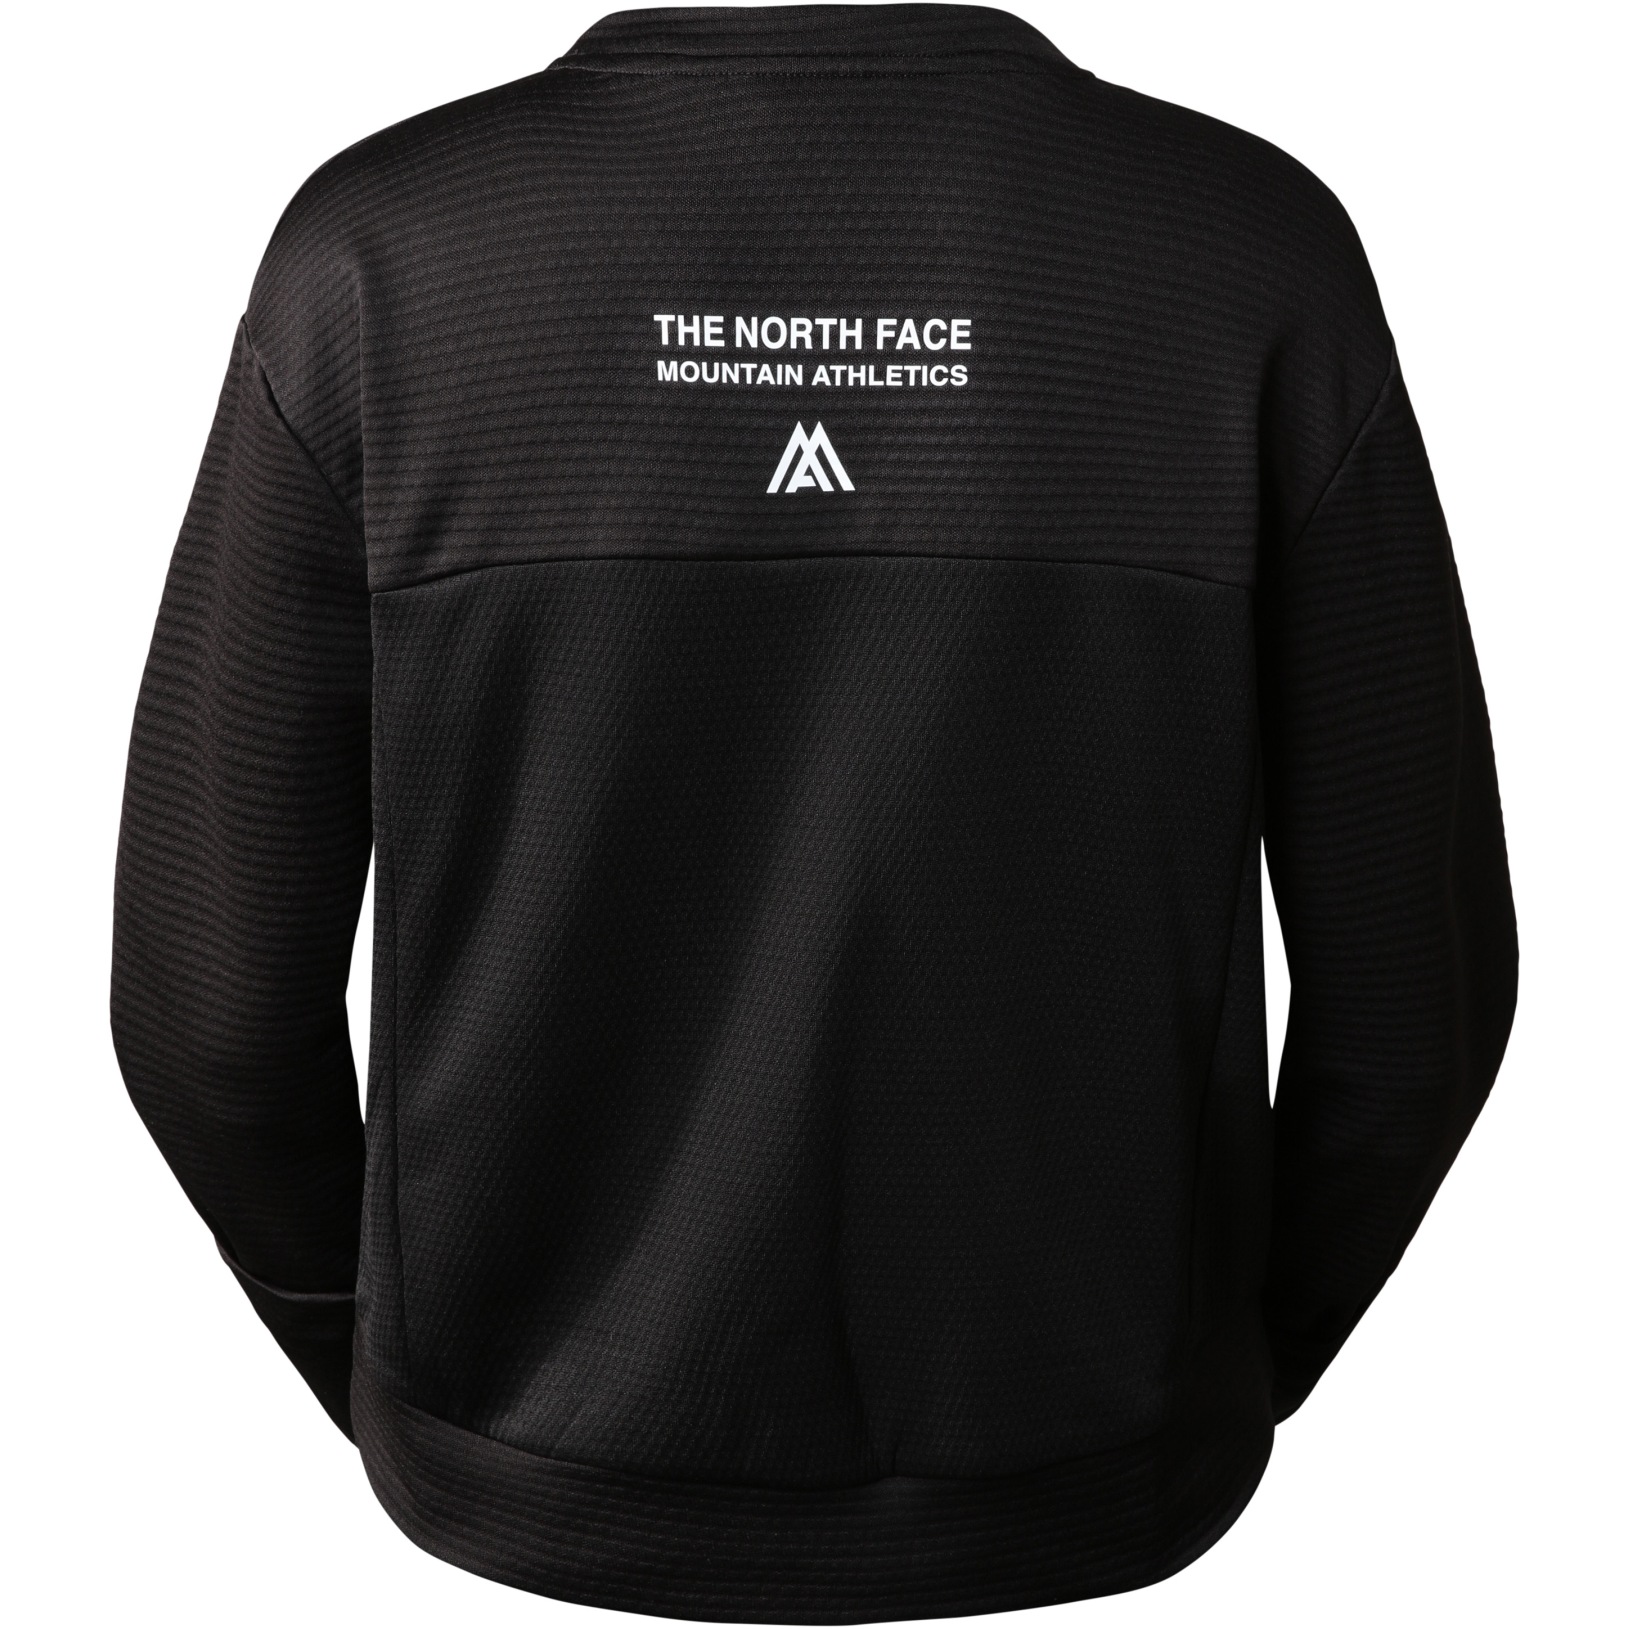 The North Face Mountain Athletics Crew Neck Fleece Women - TNF Black